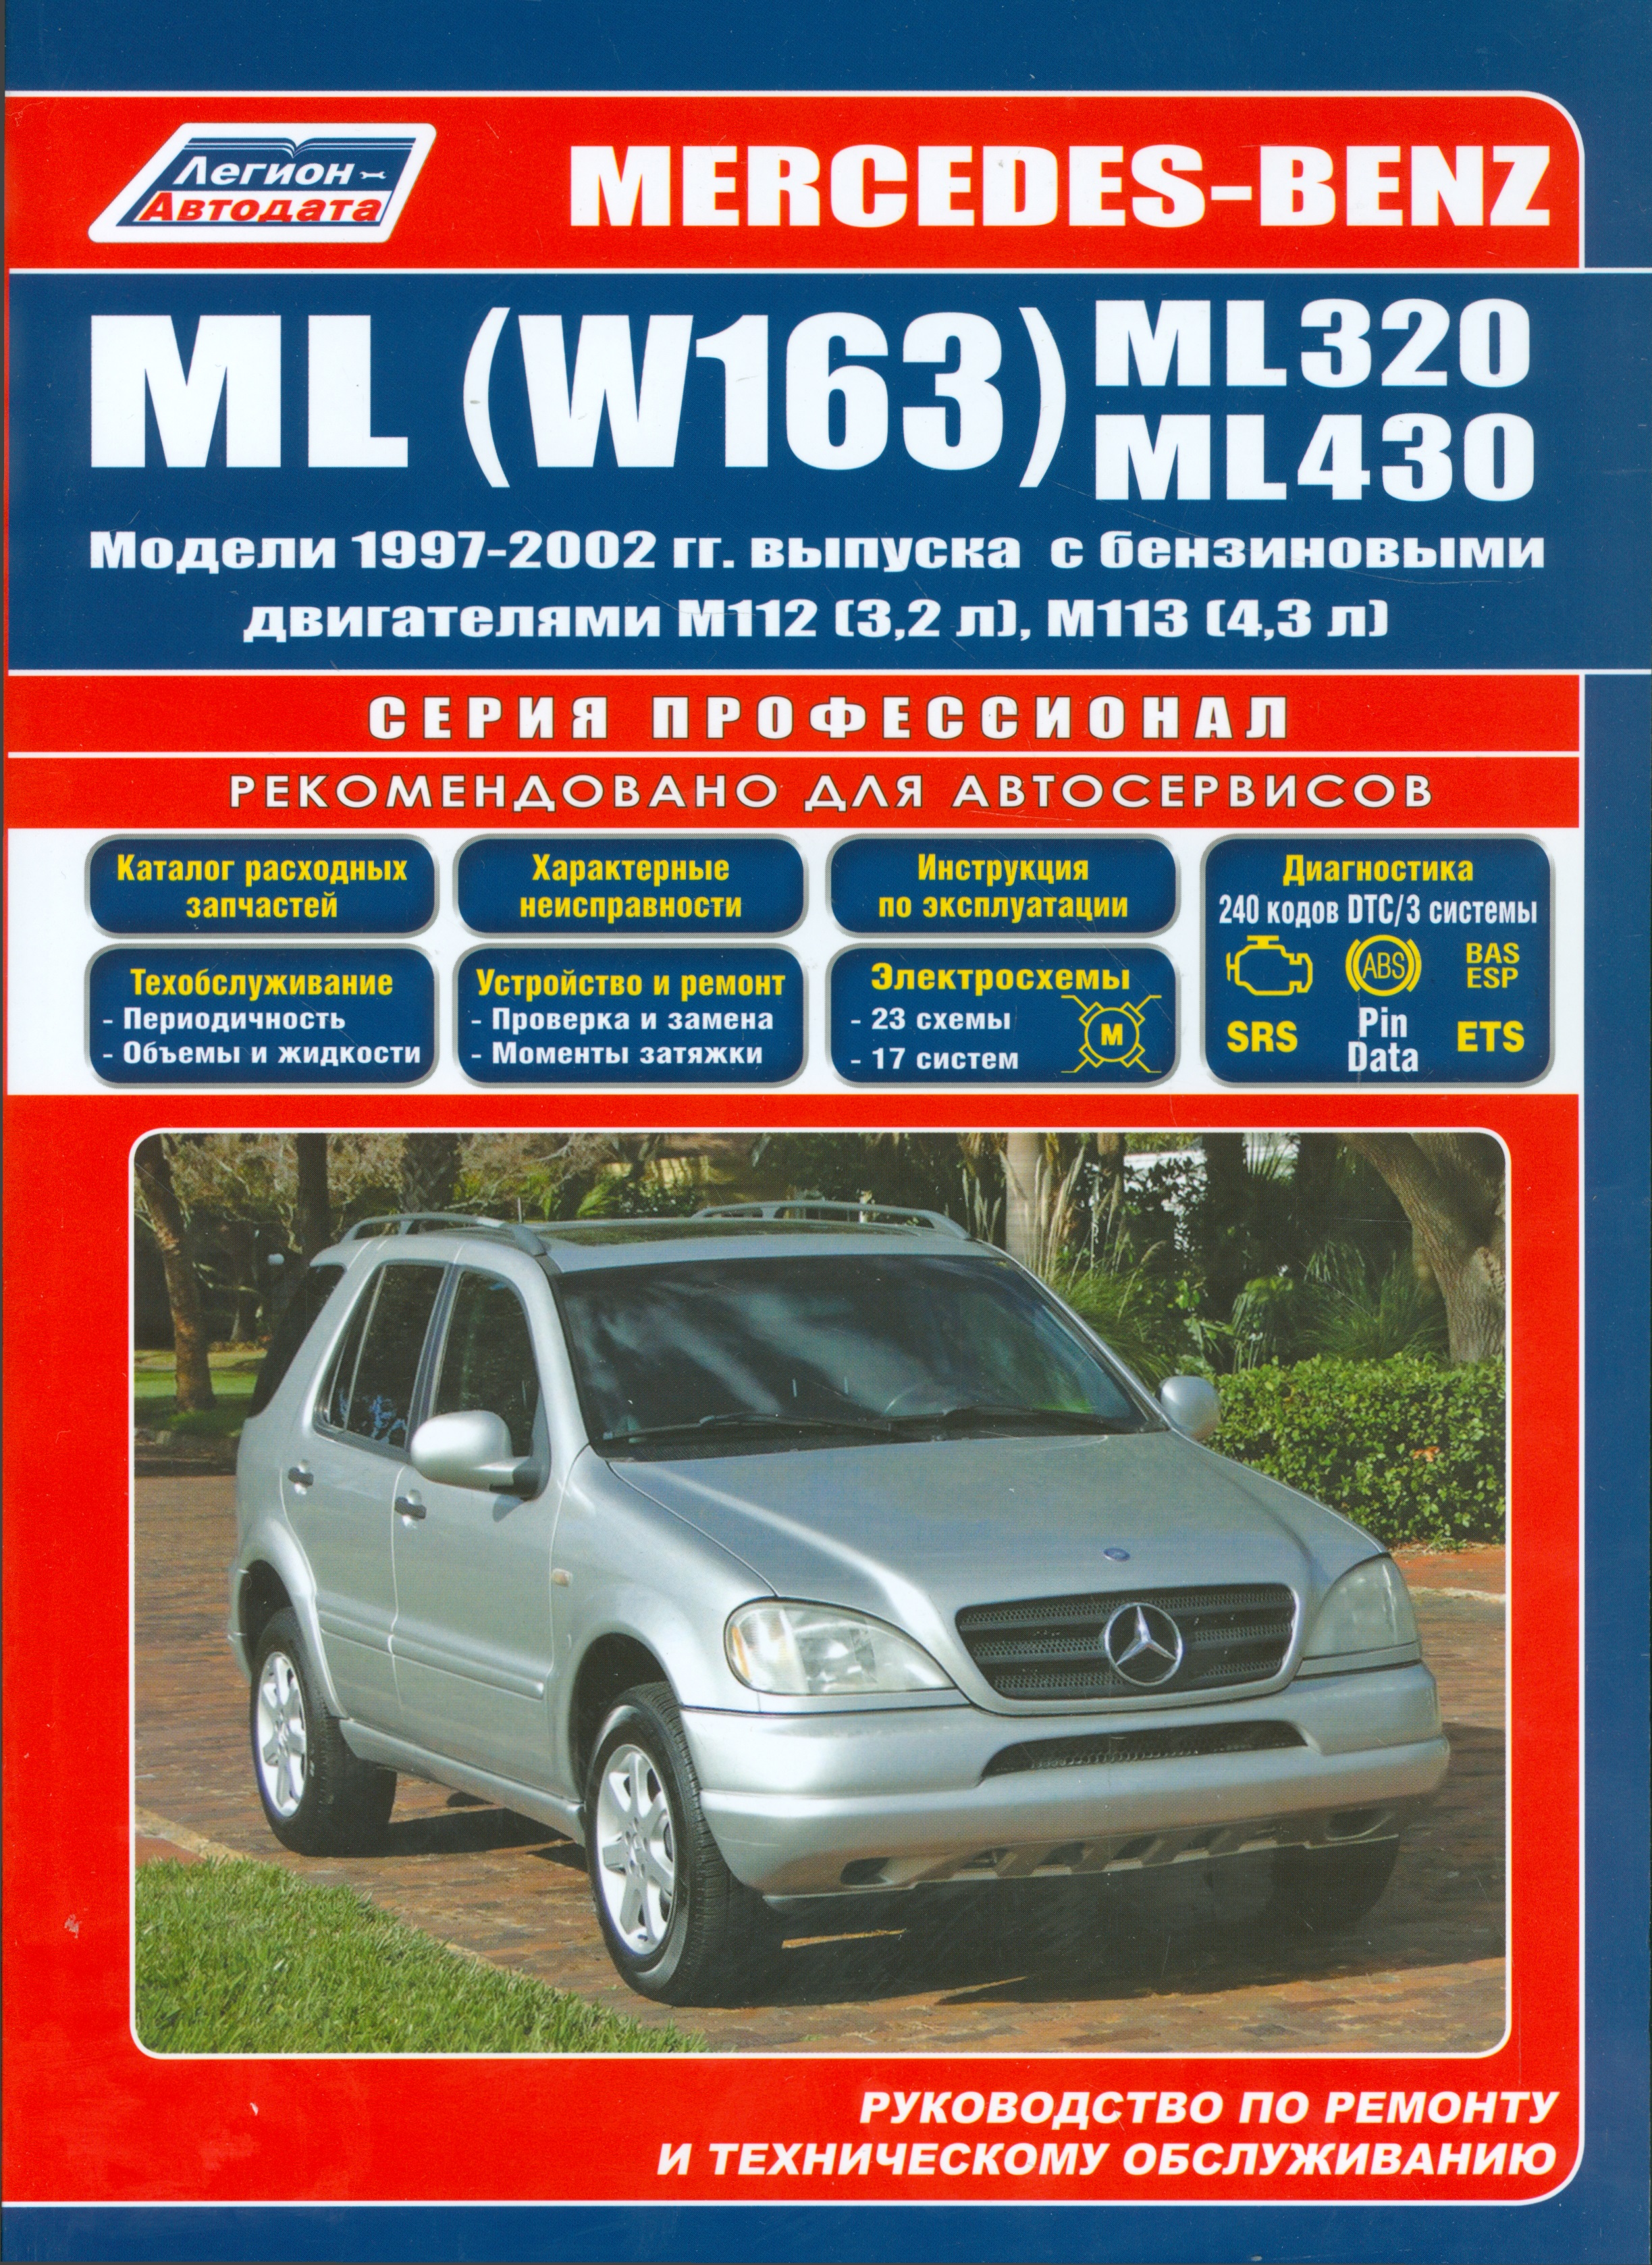 Mercedes-Benz ML (W163) ML320 ML430 Мод. 1997-2002 гг. вып. С бенз. (мПрофессионал) new auxiliary water pump a0018356064 for mercedes m w163 ml230 ml320 ml350 ml500 ml55 0392020044